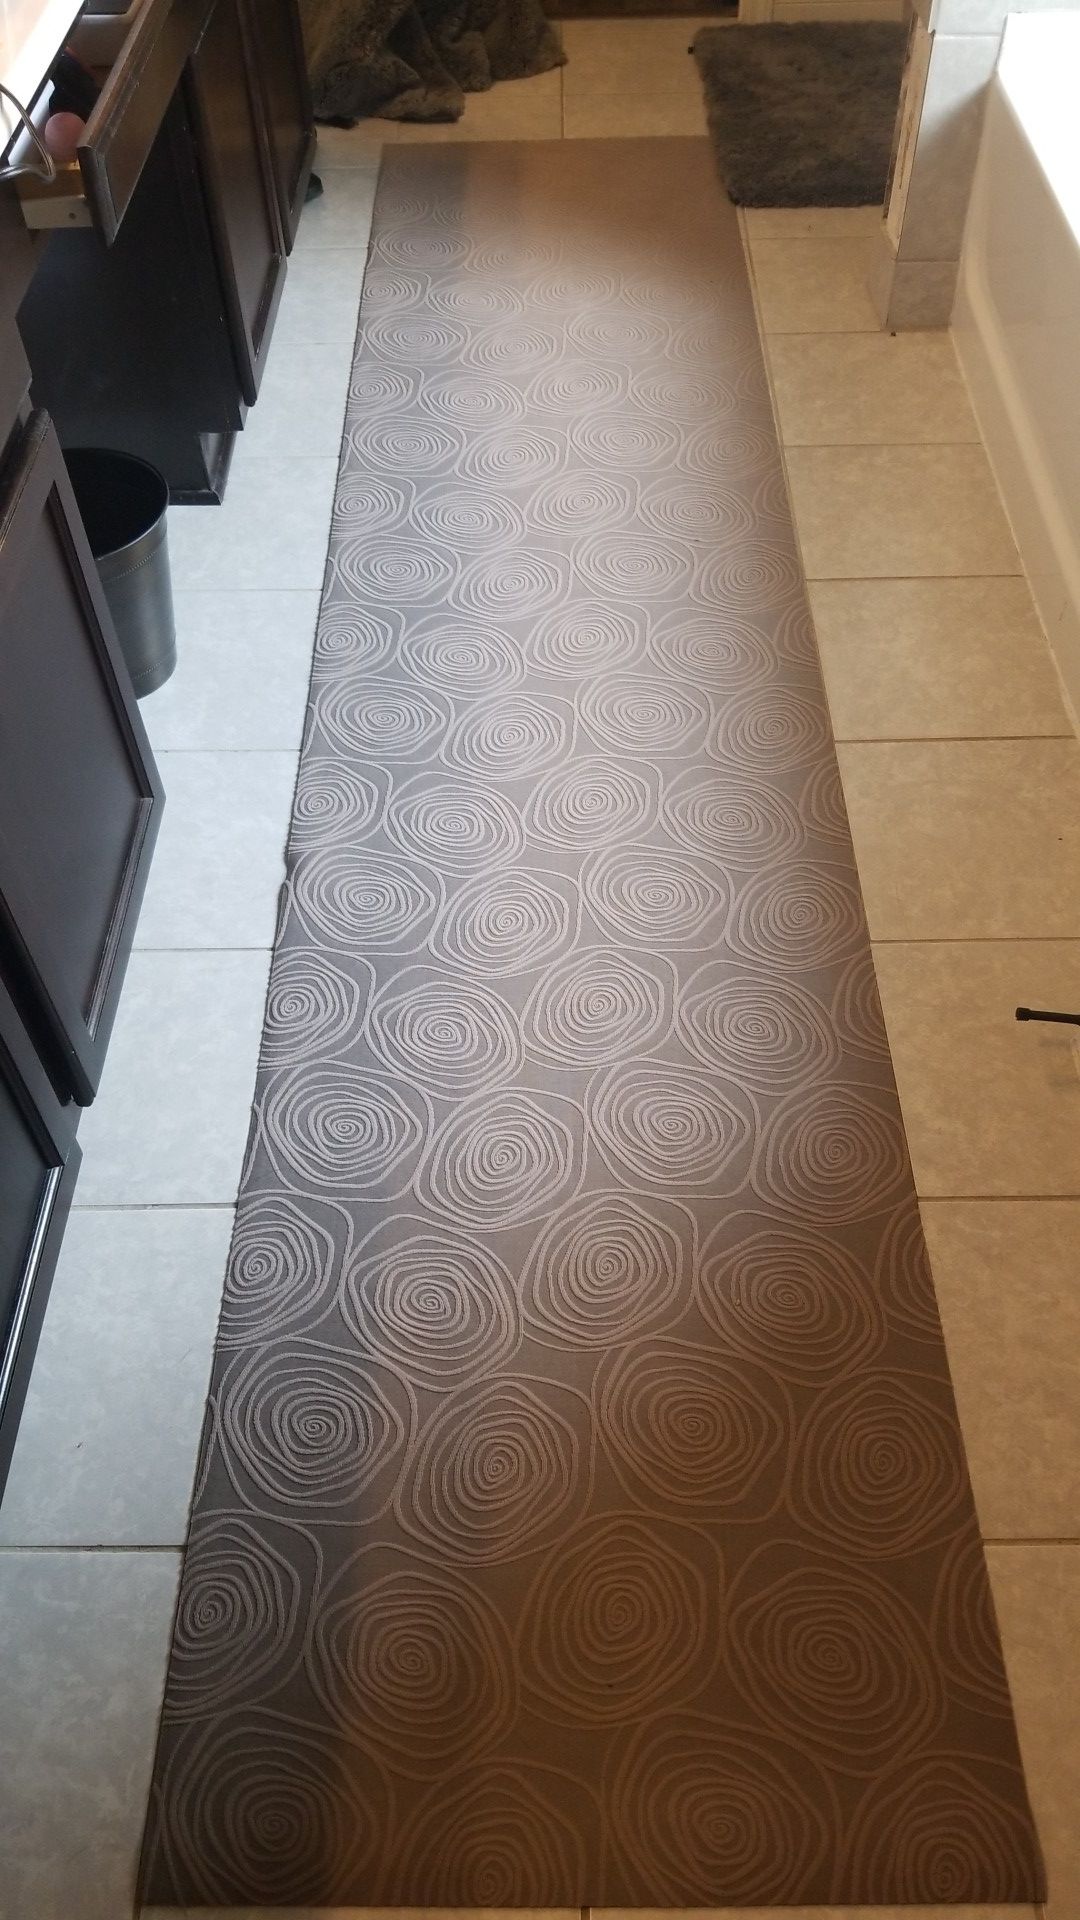 Bellisima kitchen runner rug, anti skid rubber backing, beige 2'2x10'0